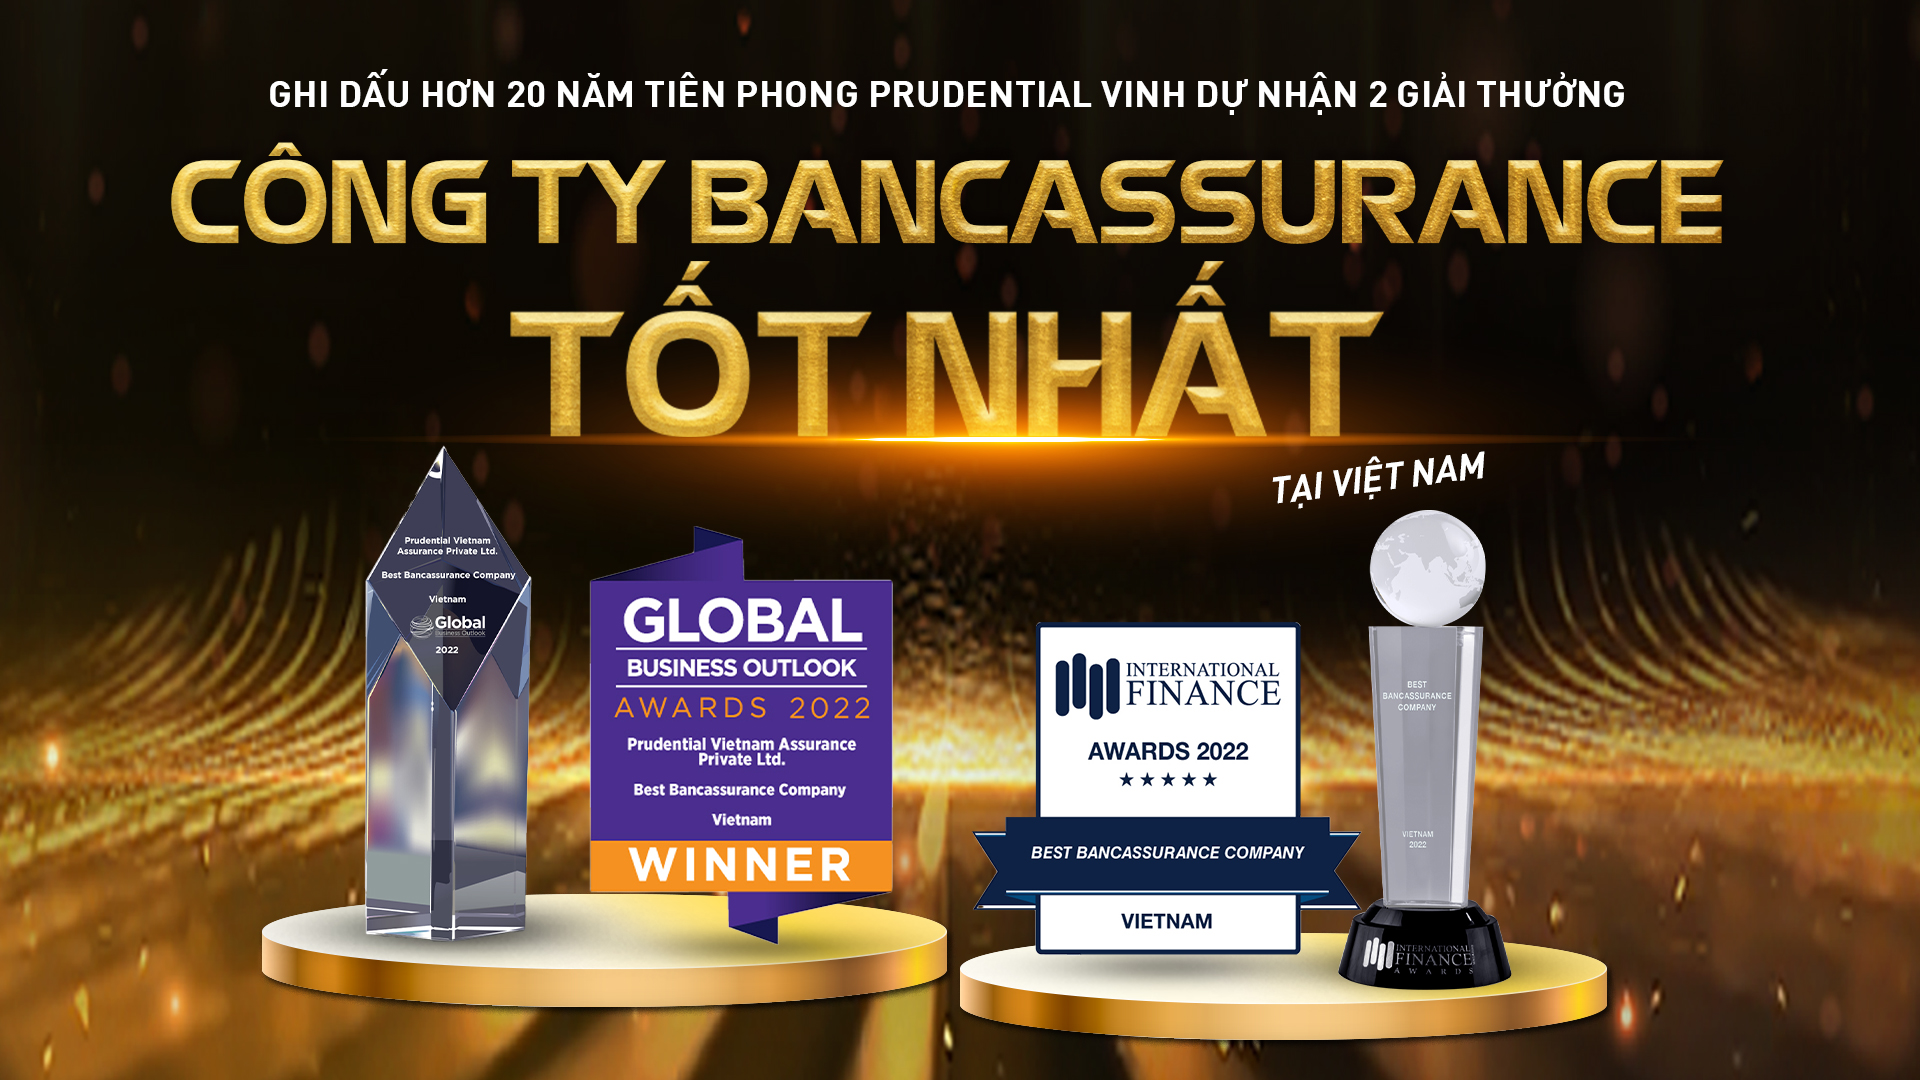 Prudential Việt Nam liên tiếp đón nhận 2 giải thưởng uy tín cho kênh phân phối qua hợp tác Ngân hàng - Ảnh 1.